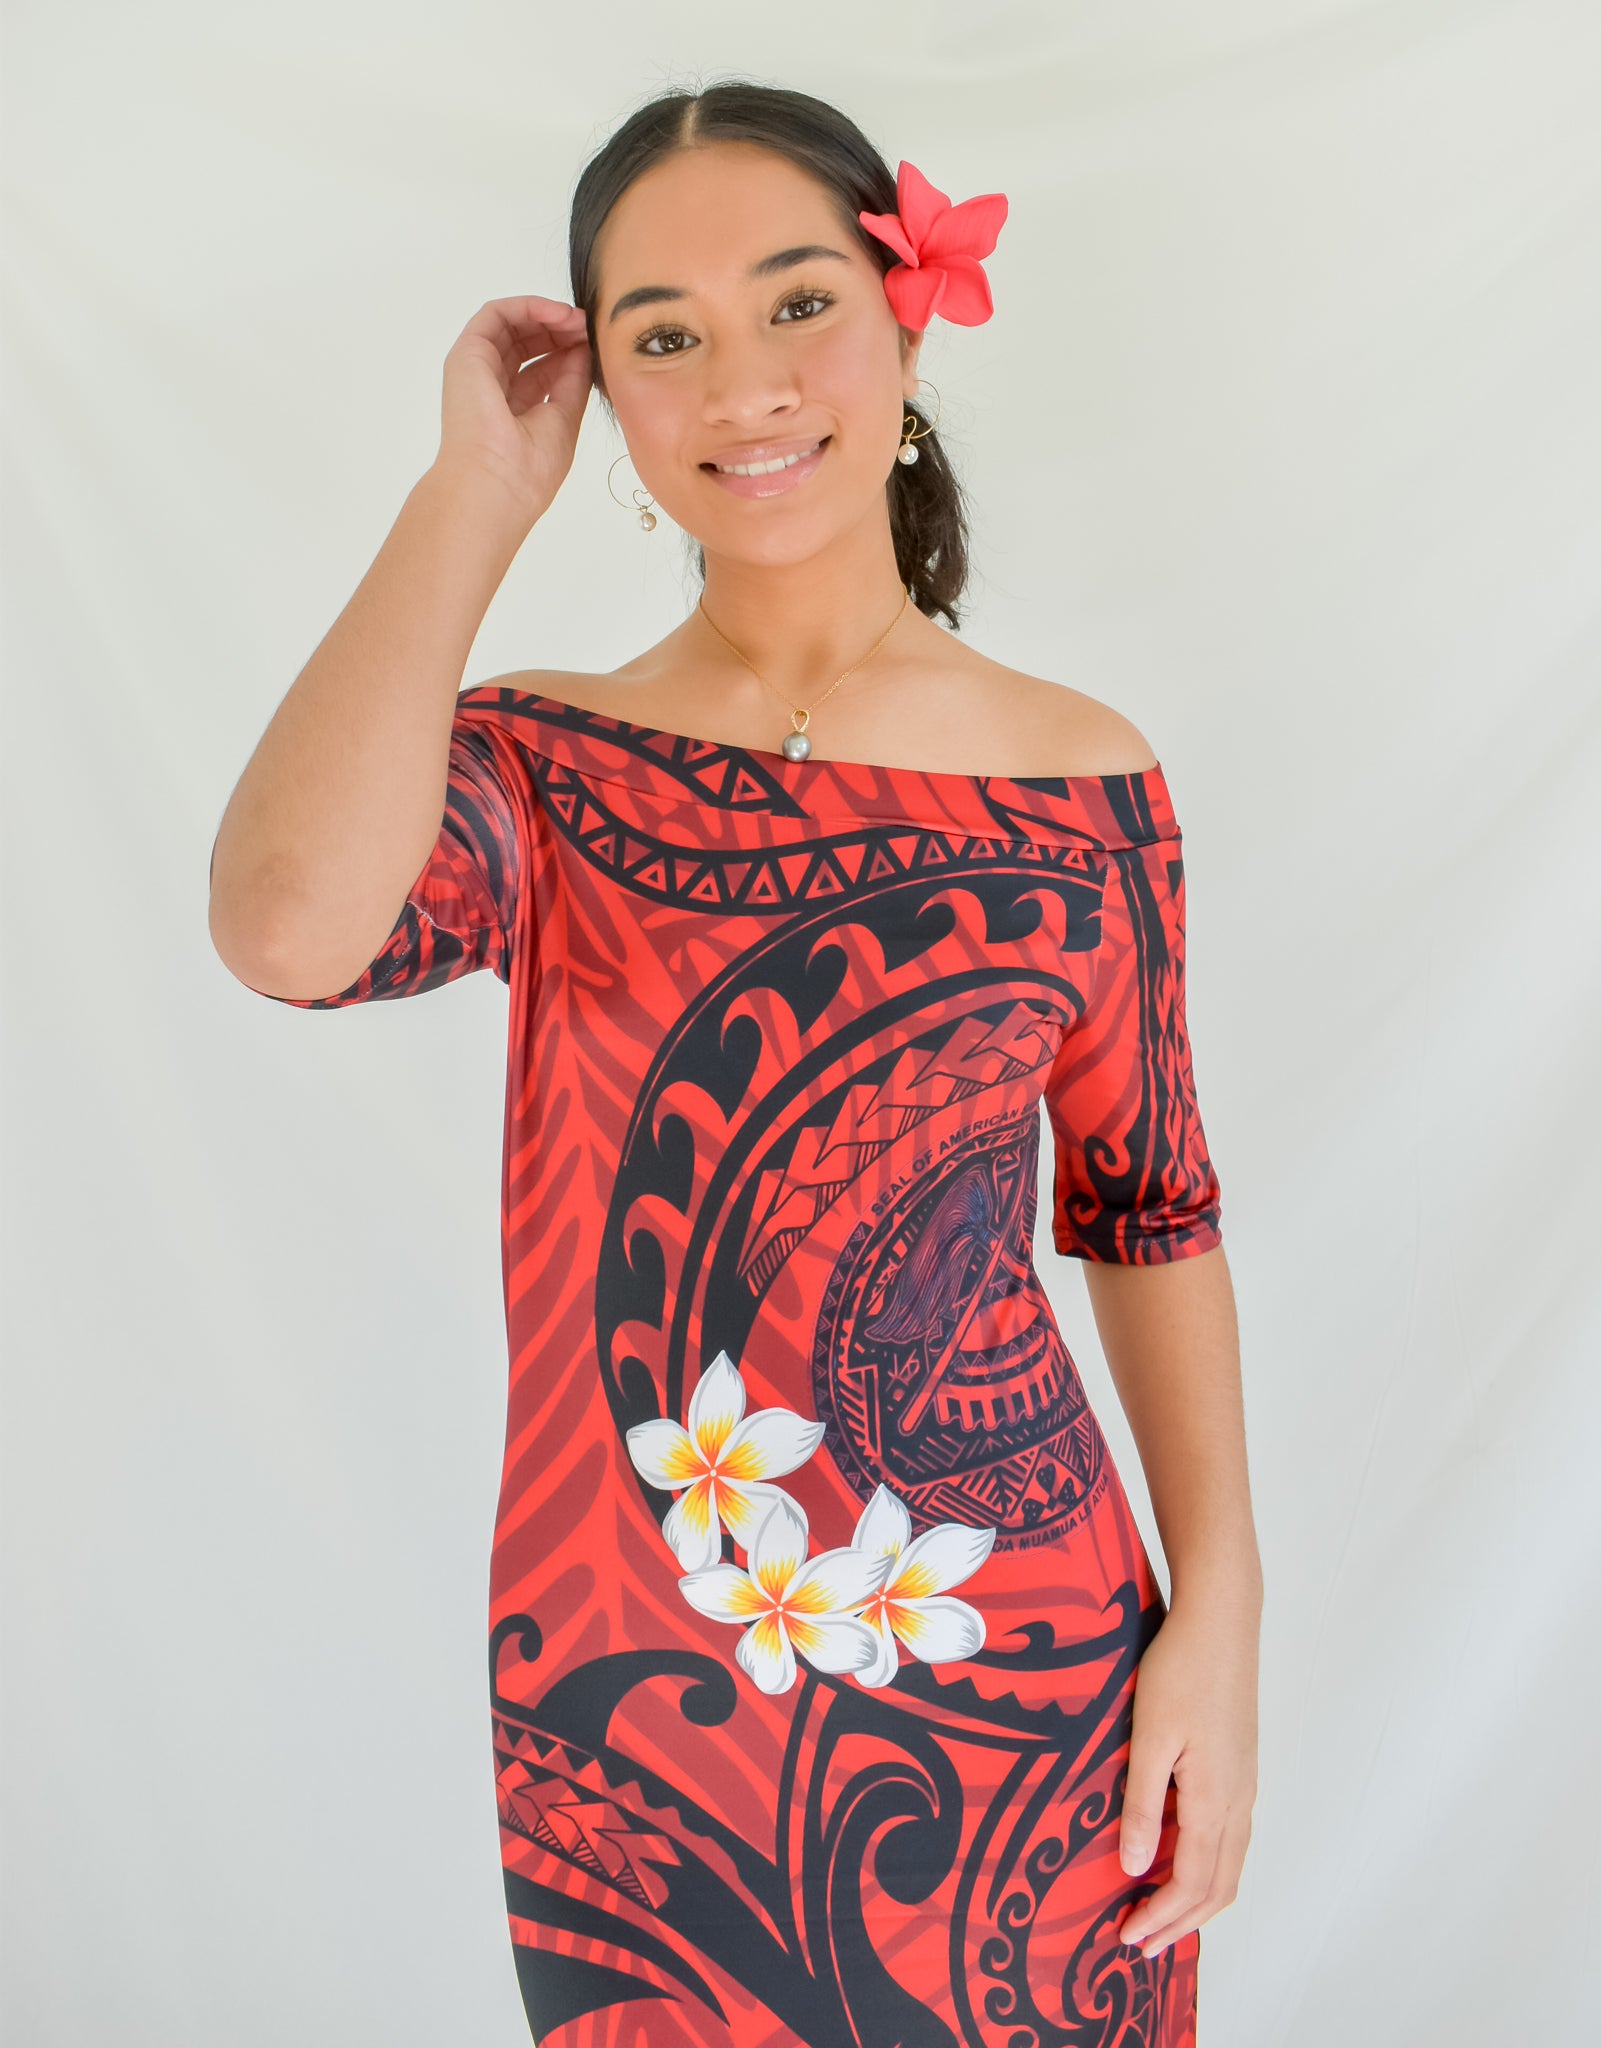 Puletasi Samoan Style | lupon.gov.ph